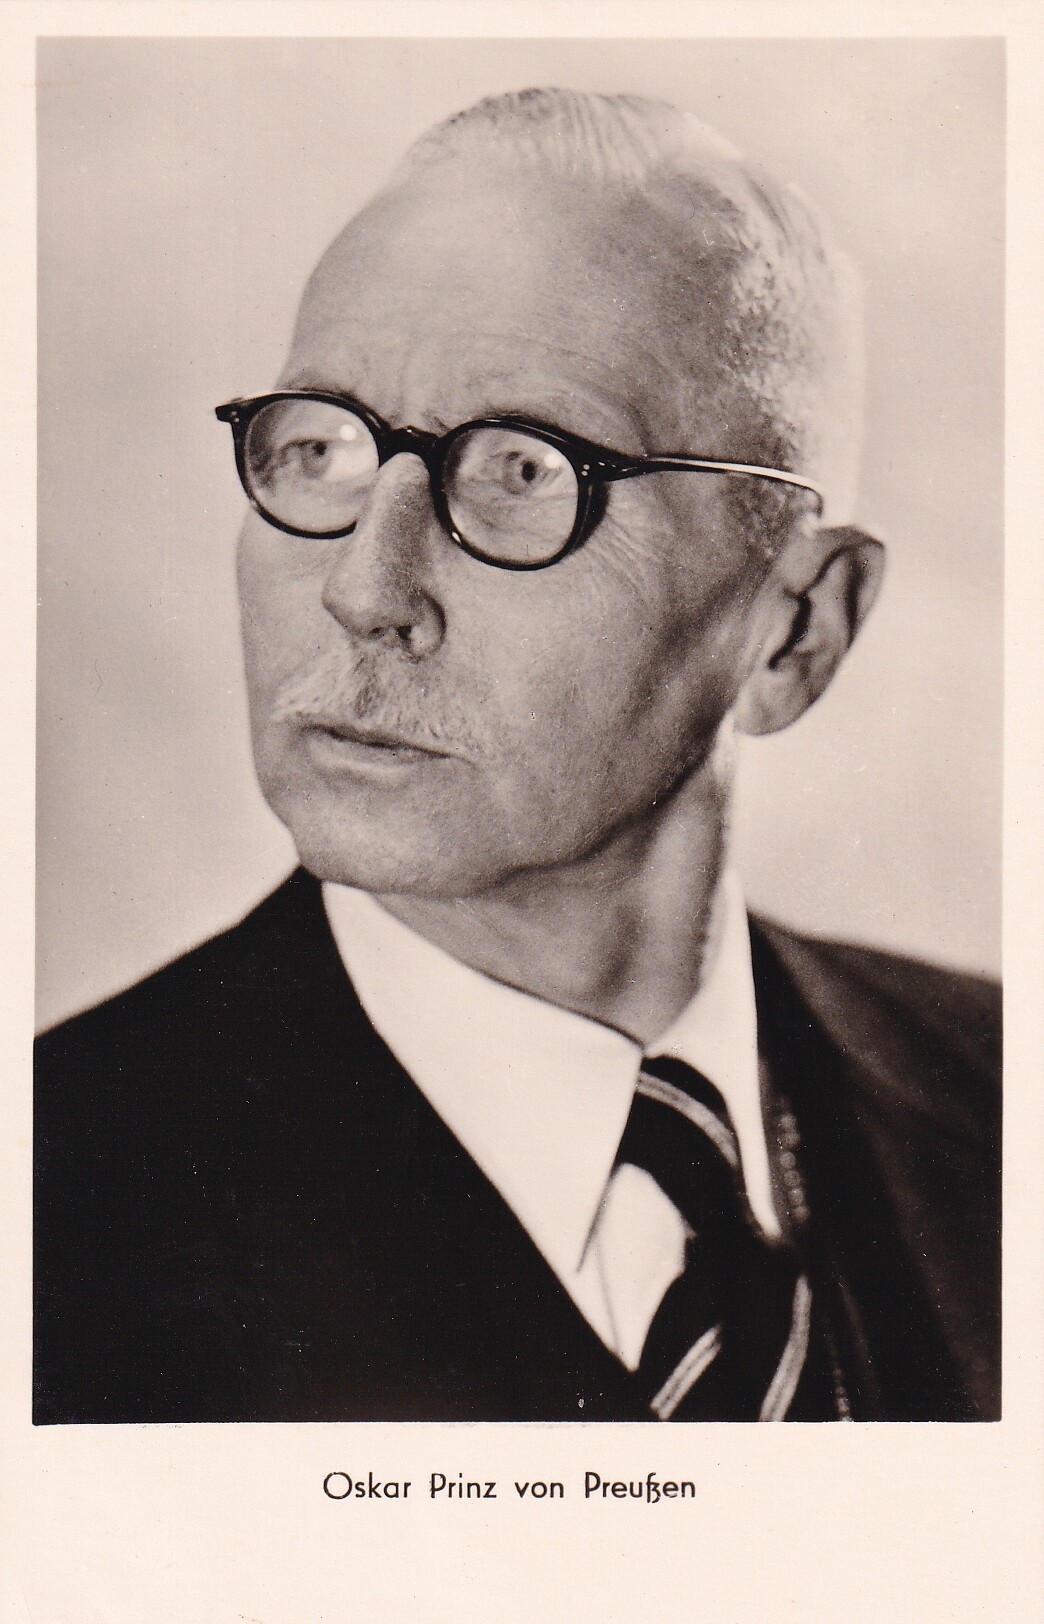 Bildpostkarte mit Foto des Oskar Prinz von Preußen, 1953 (Schloß Wernigerode GmbH RR-F)